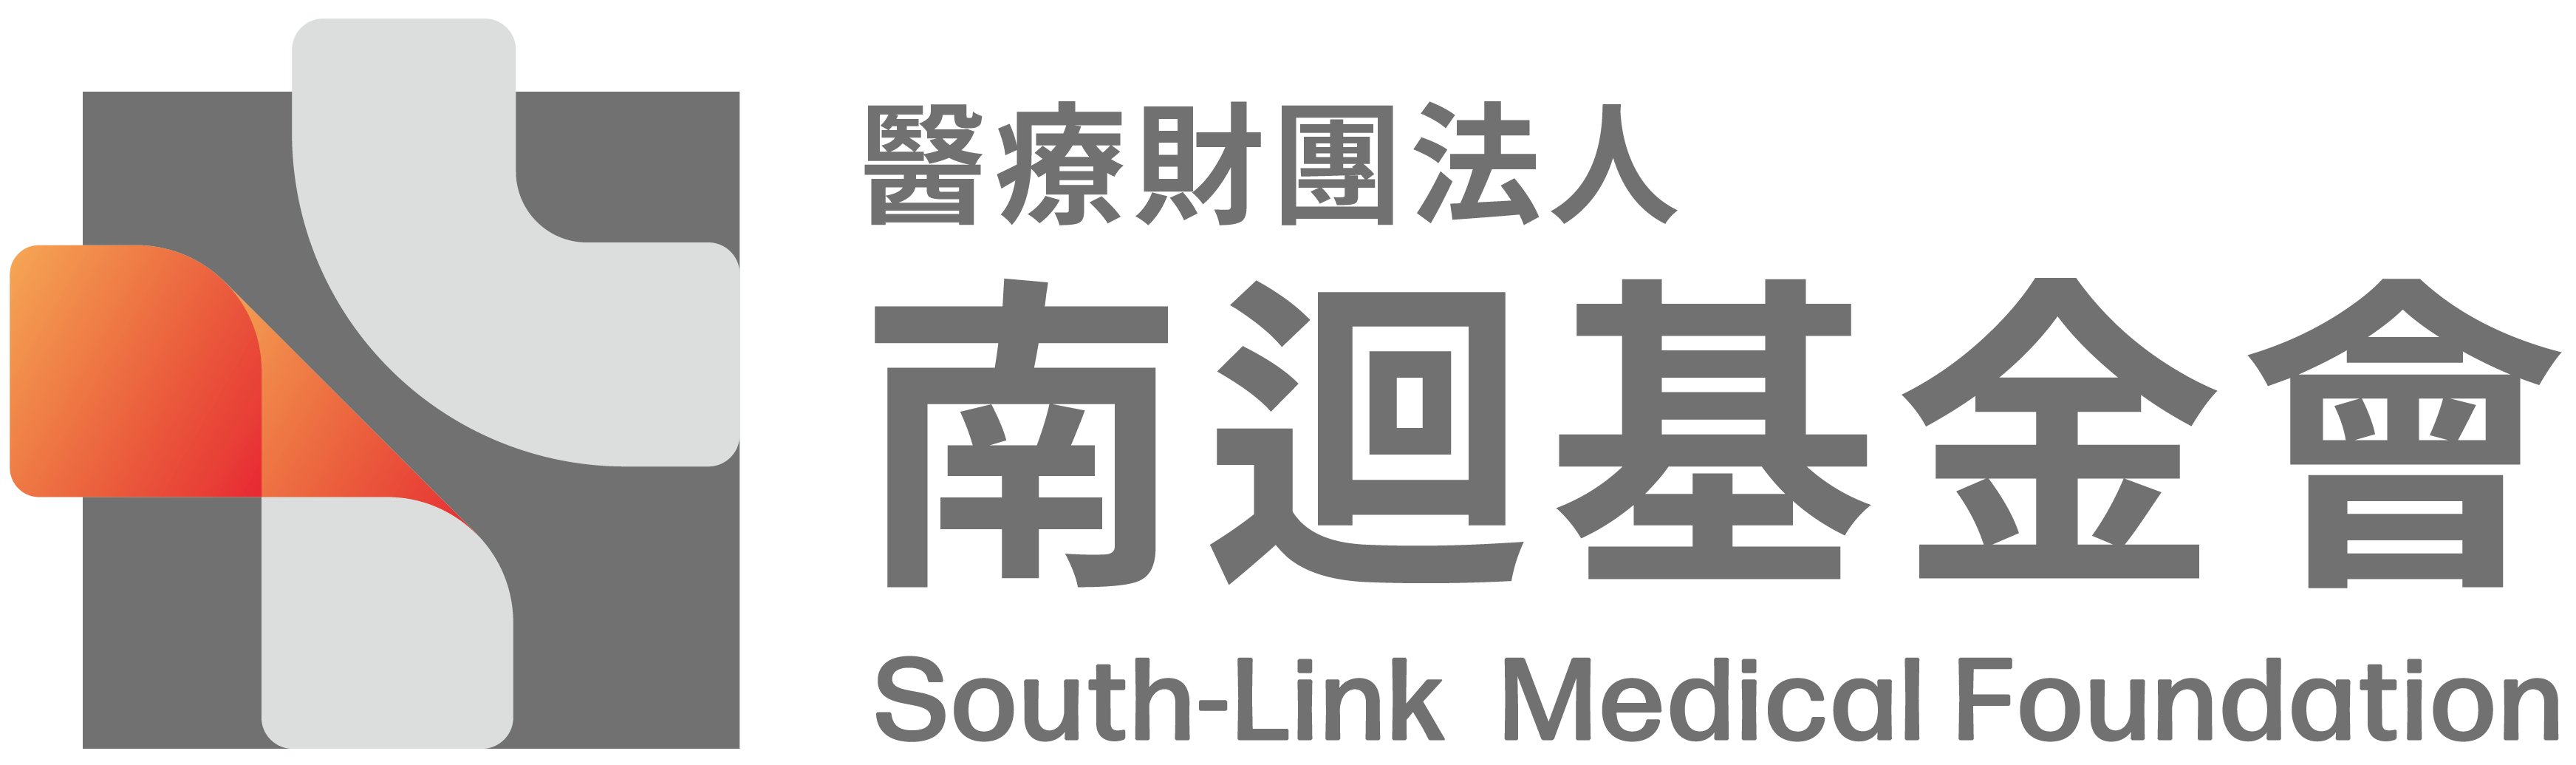 南迴基金會_logo